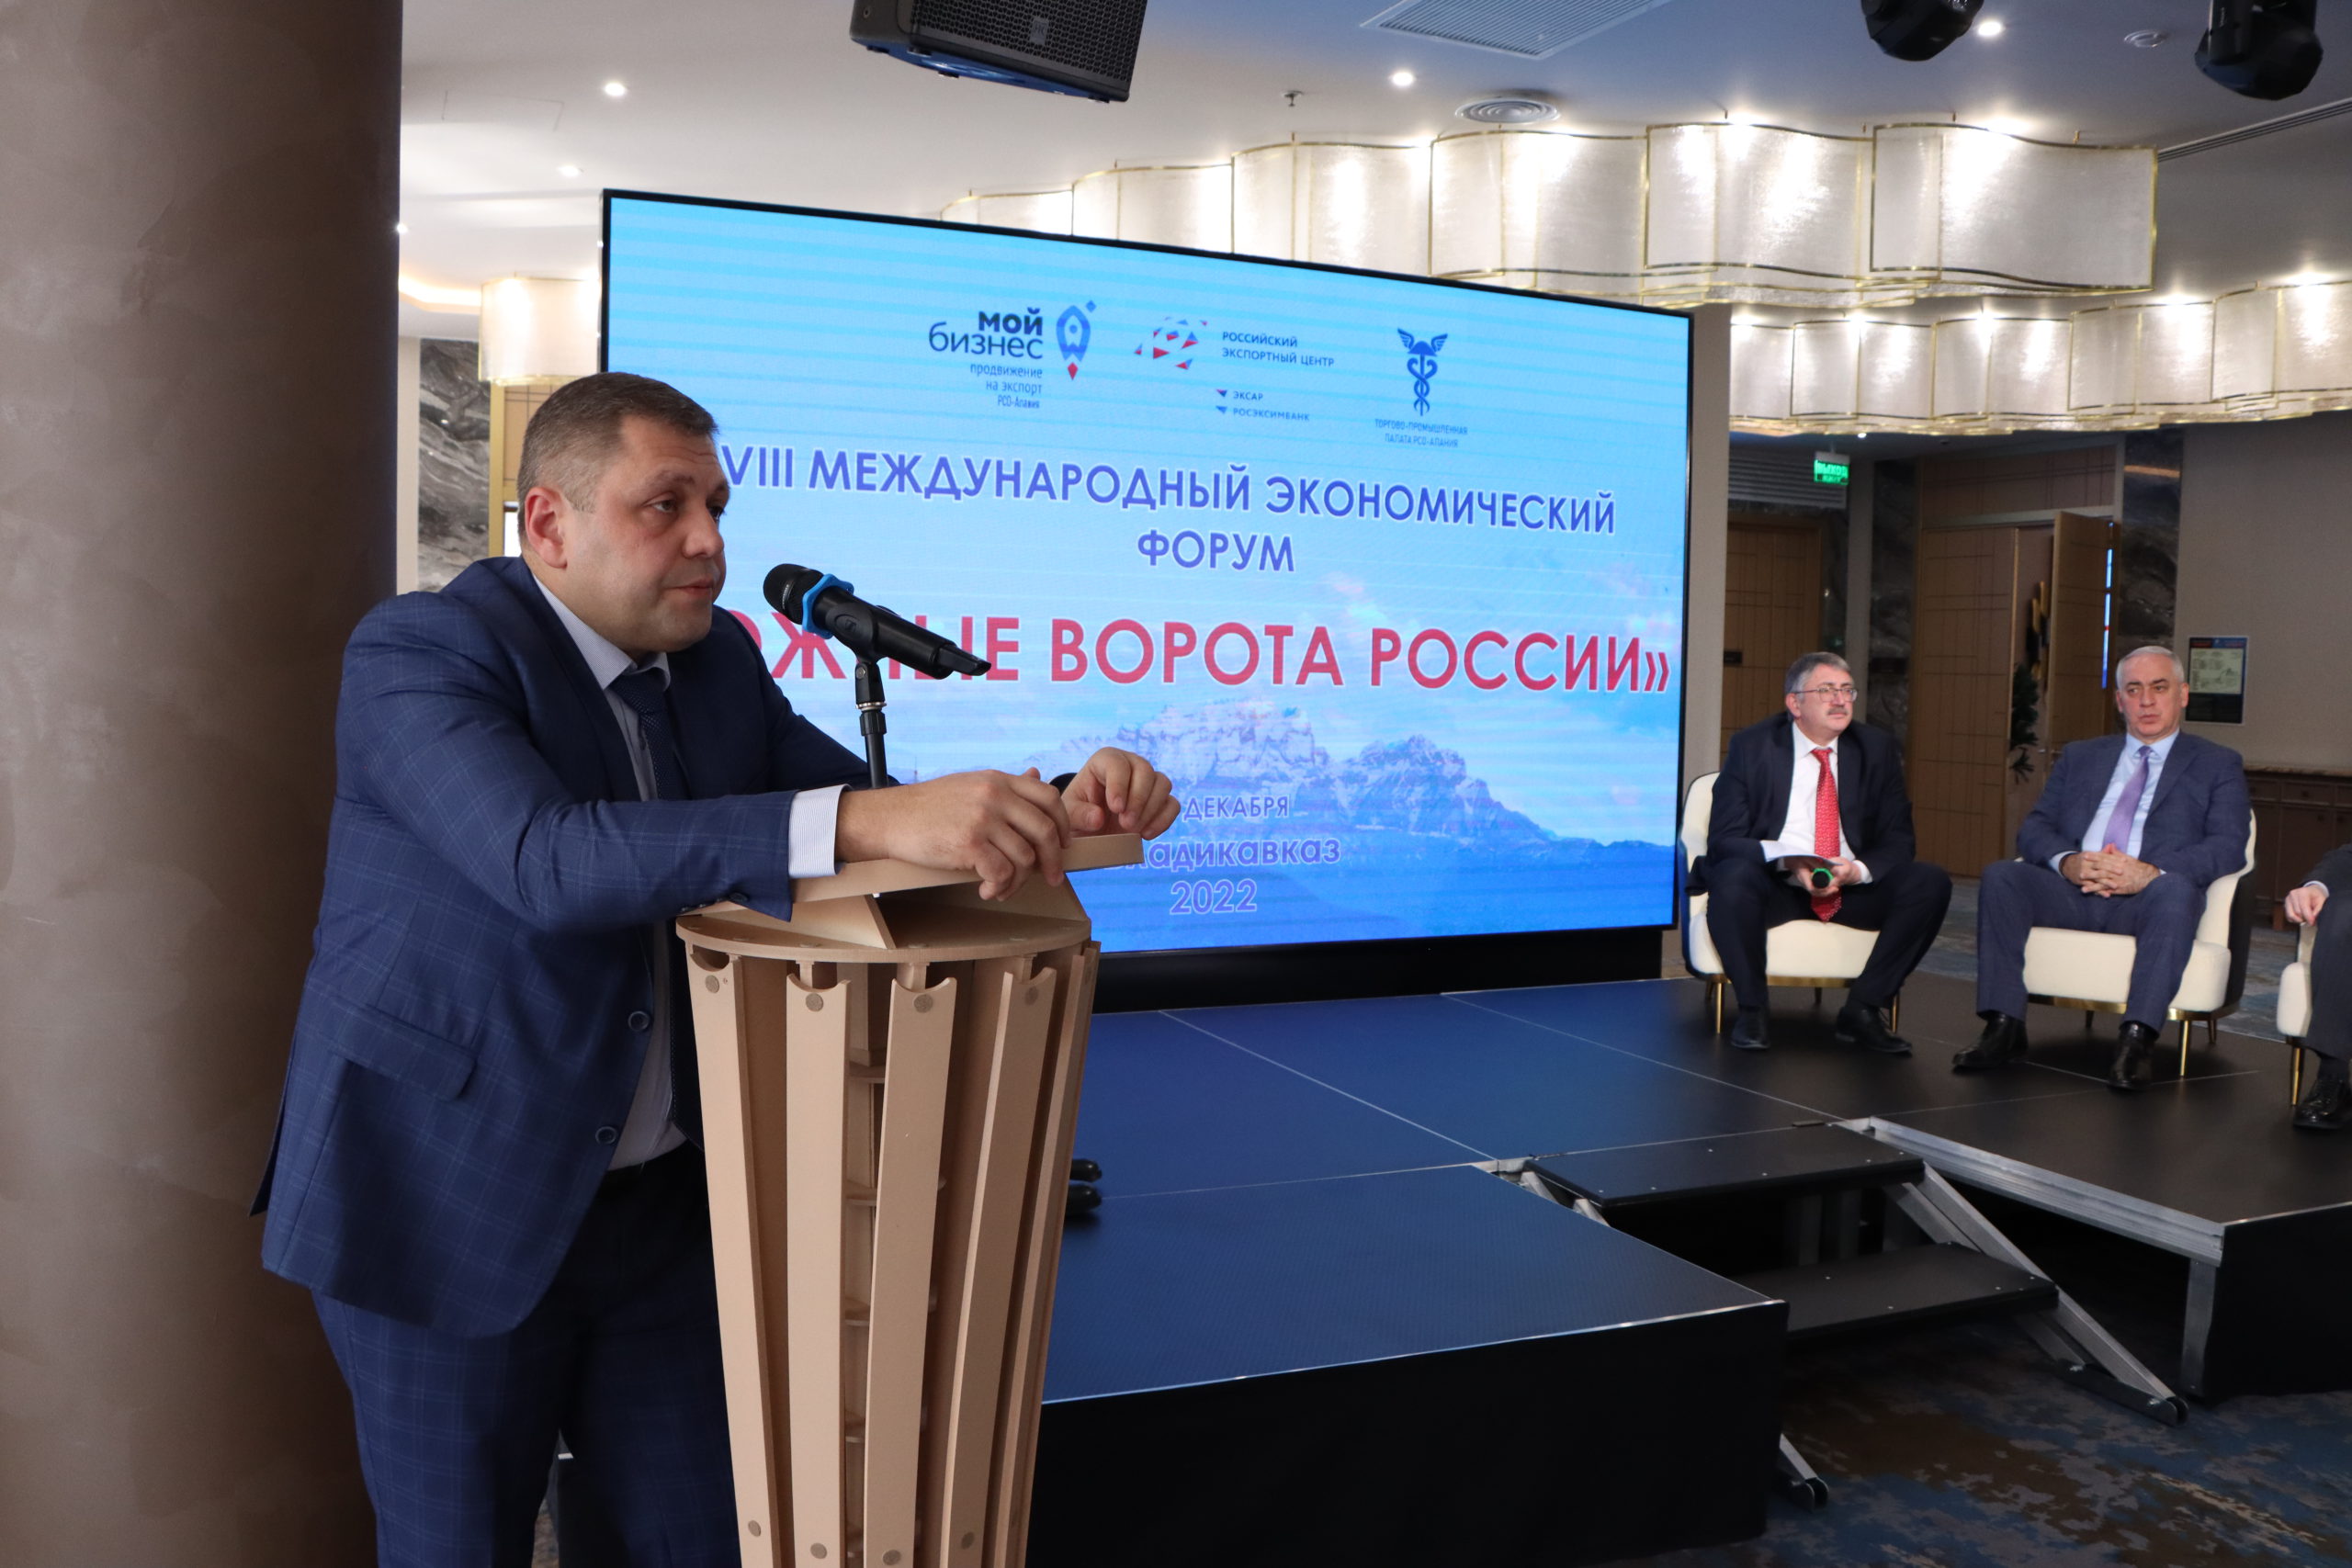 Во Владикавказе состоялся VIII Международный экономический форум «Южные ворота России»